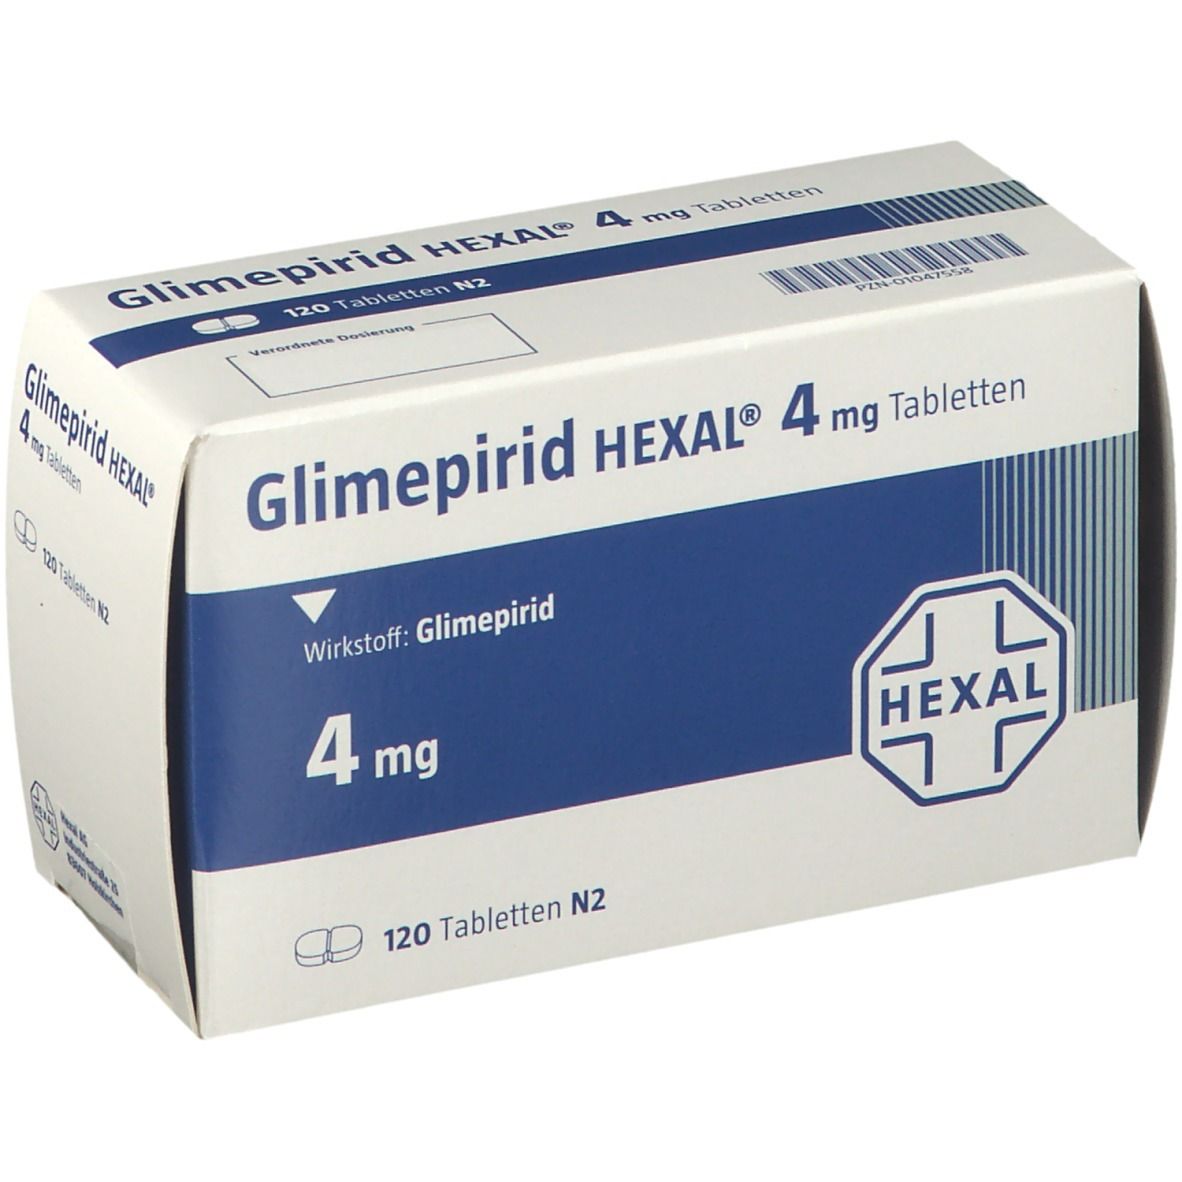 Glimepirid HEXAL® 4 mg